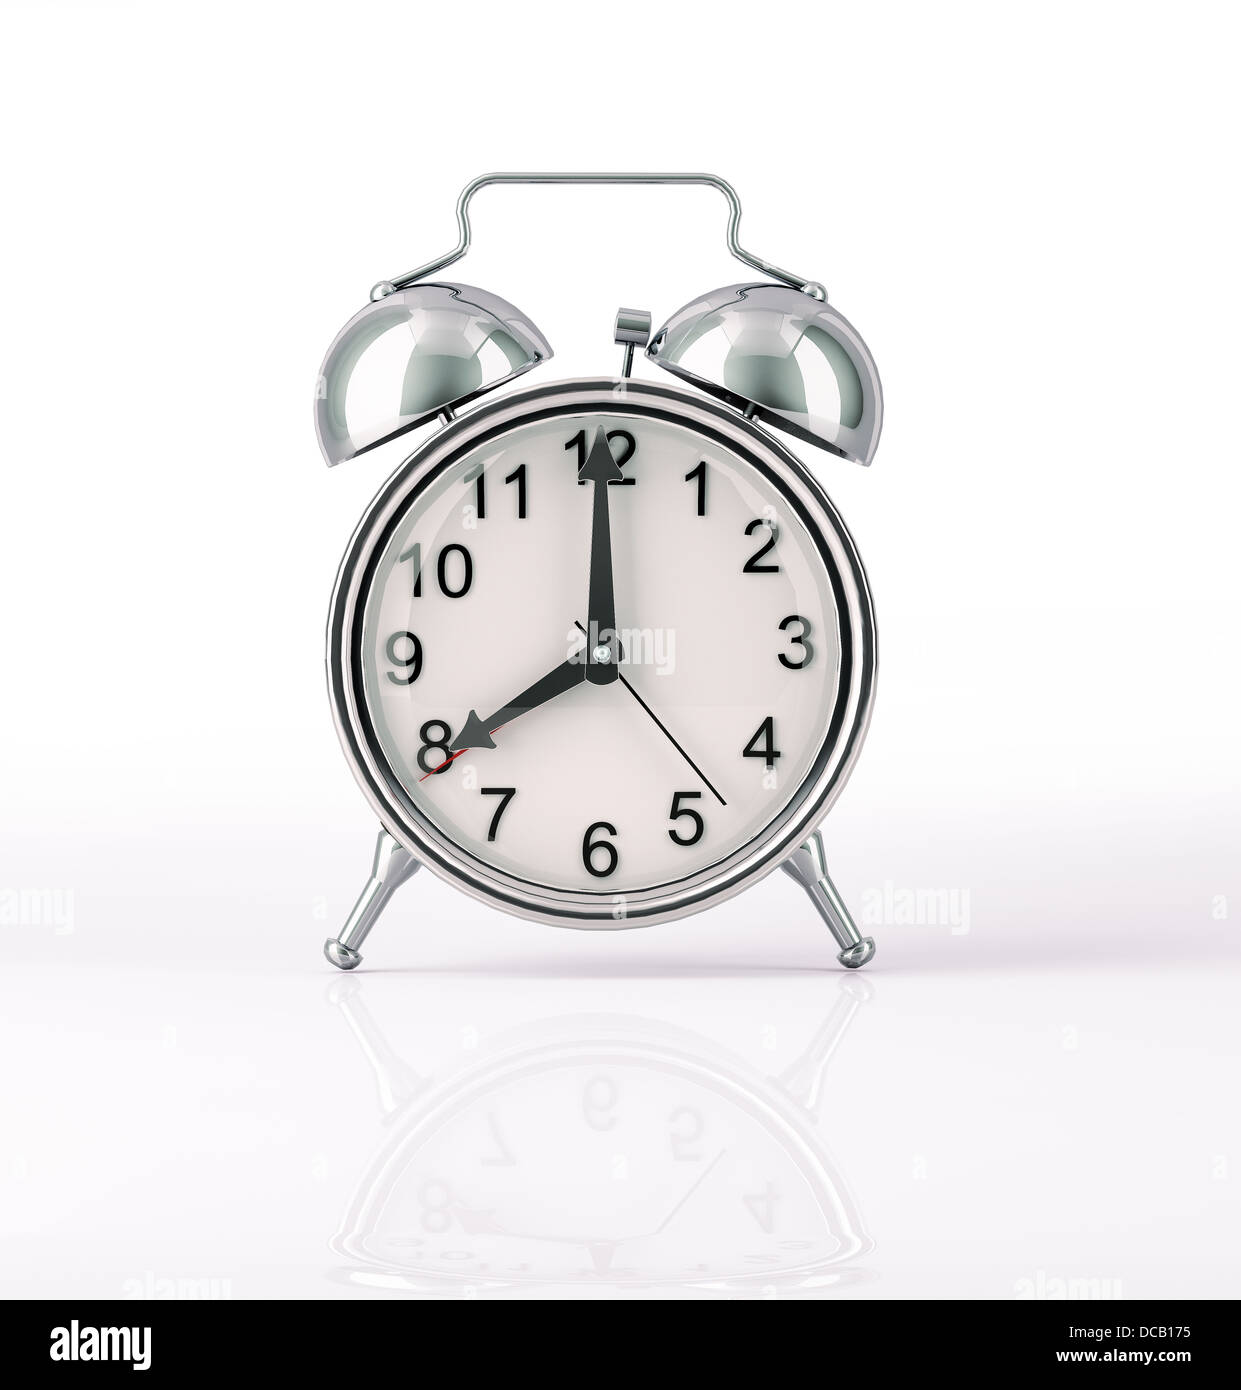 Classic orologio sveglia cromato, vista anteriore su sfondo bianco, con lieve riflesso sulla superficie. Mani a 8 del quadrante di un orologio. Foto Stock